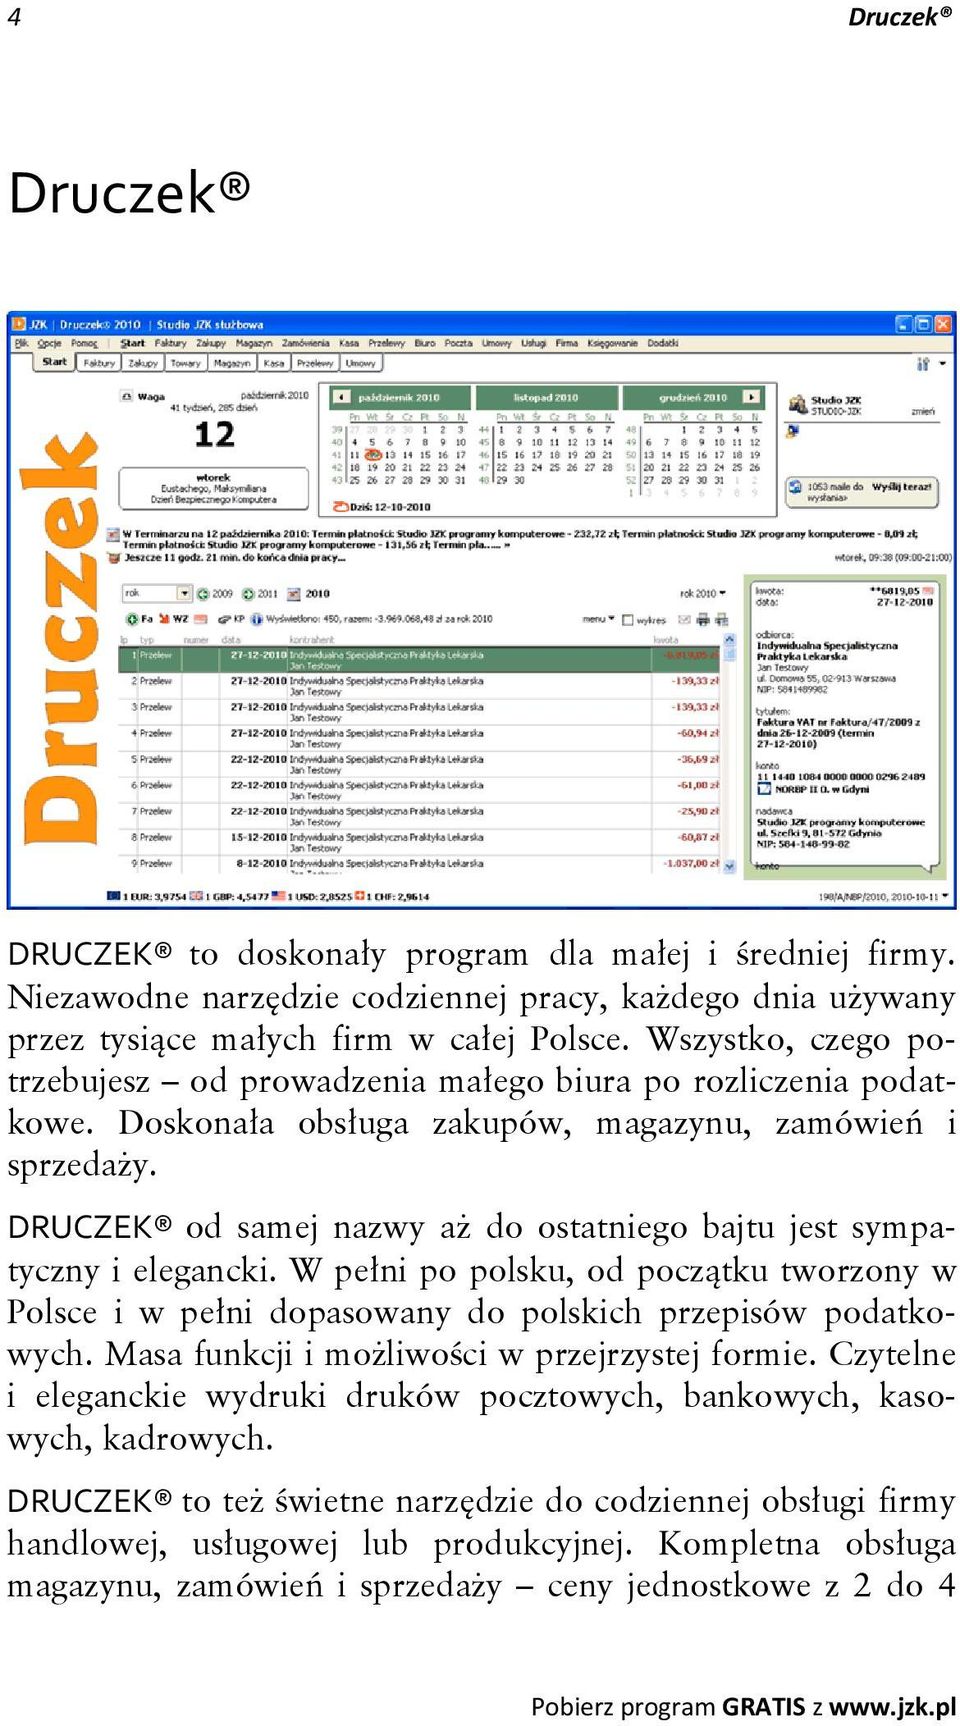 DRUCZEK od samej nazwy aż do ostatniego bajtu jest sympatyczny i elegancki. W pełni po polsku, od początku tworzony w Polsce i w pełni dopasowany do polskich przepisów podatkowych.